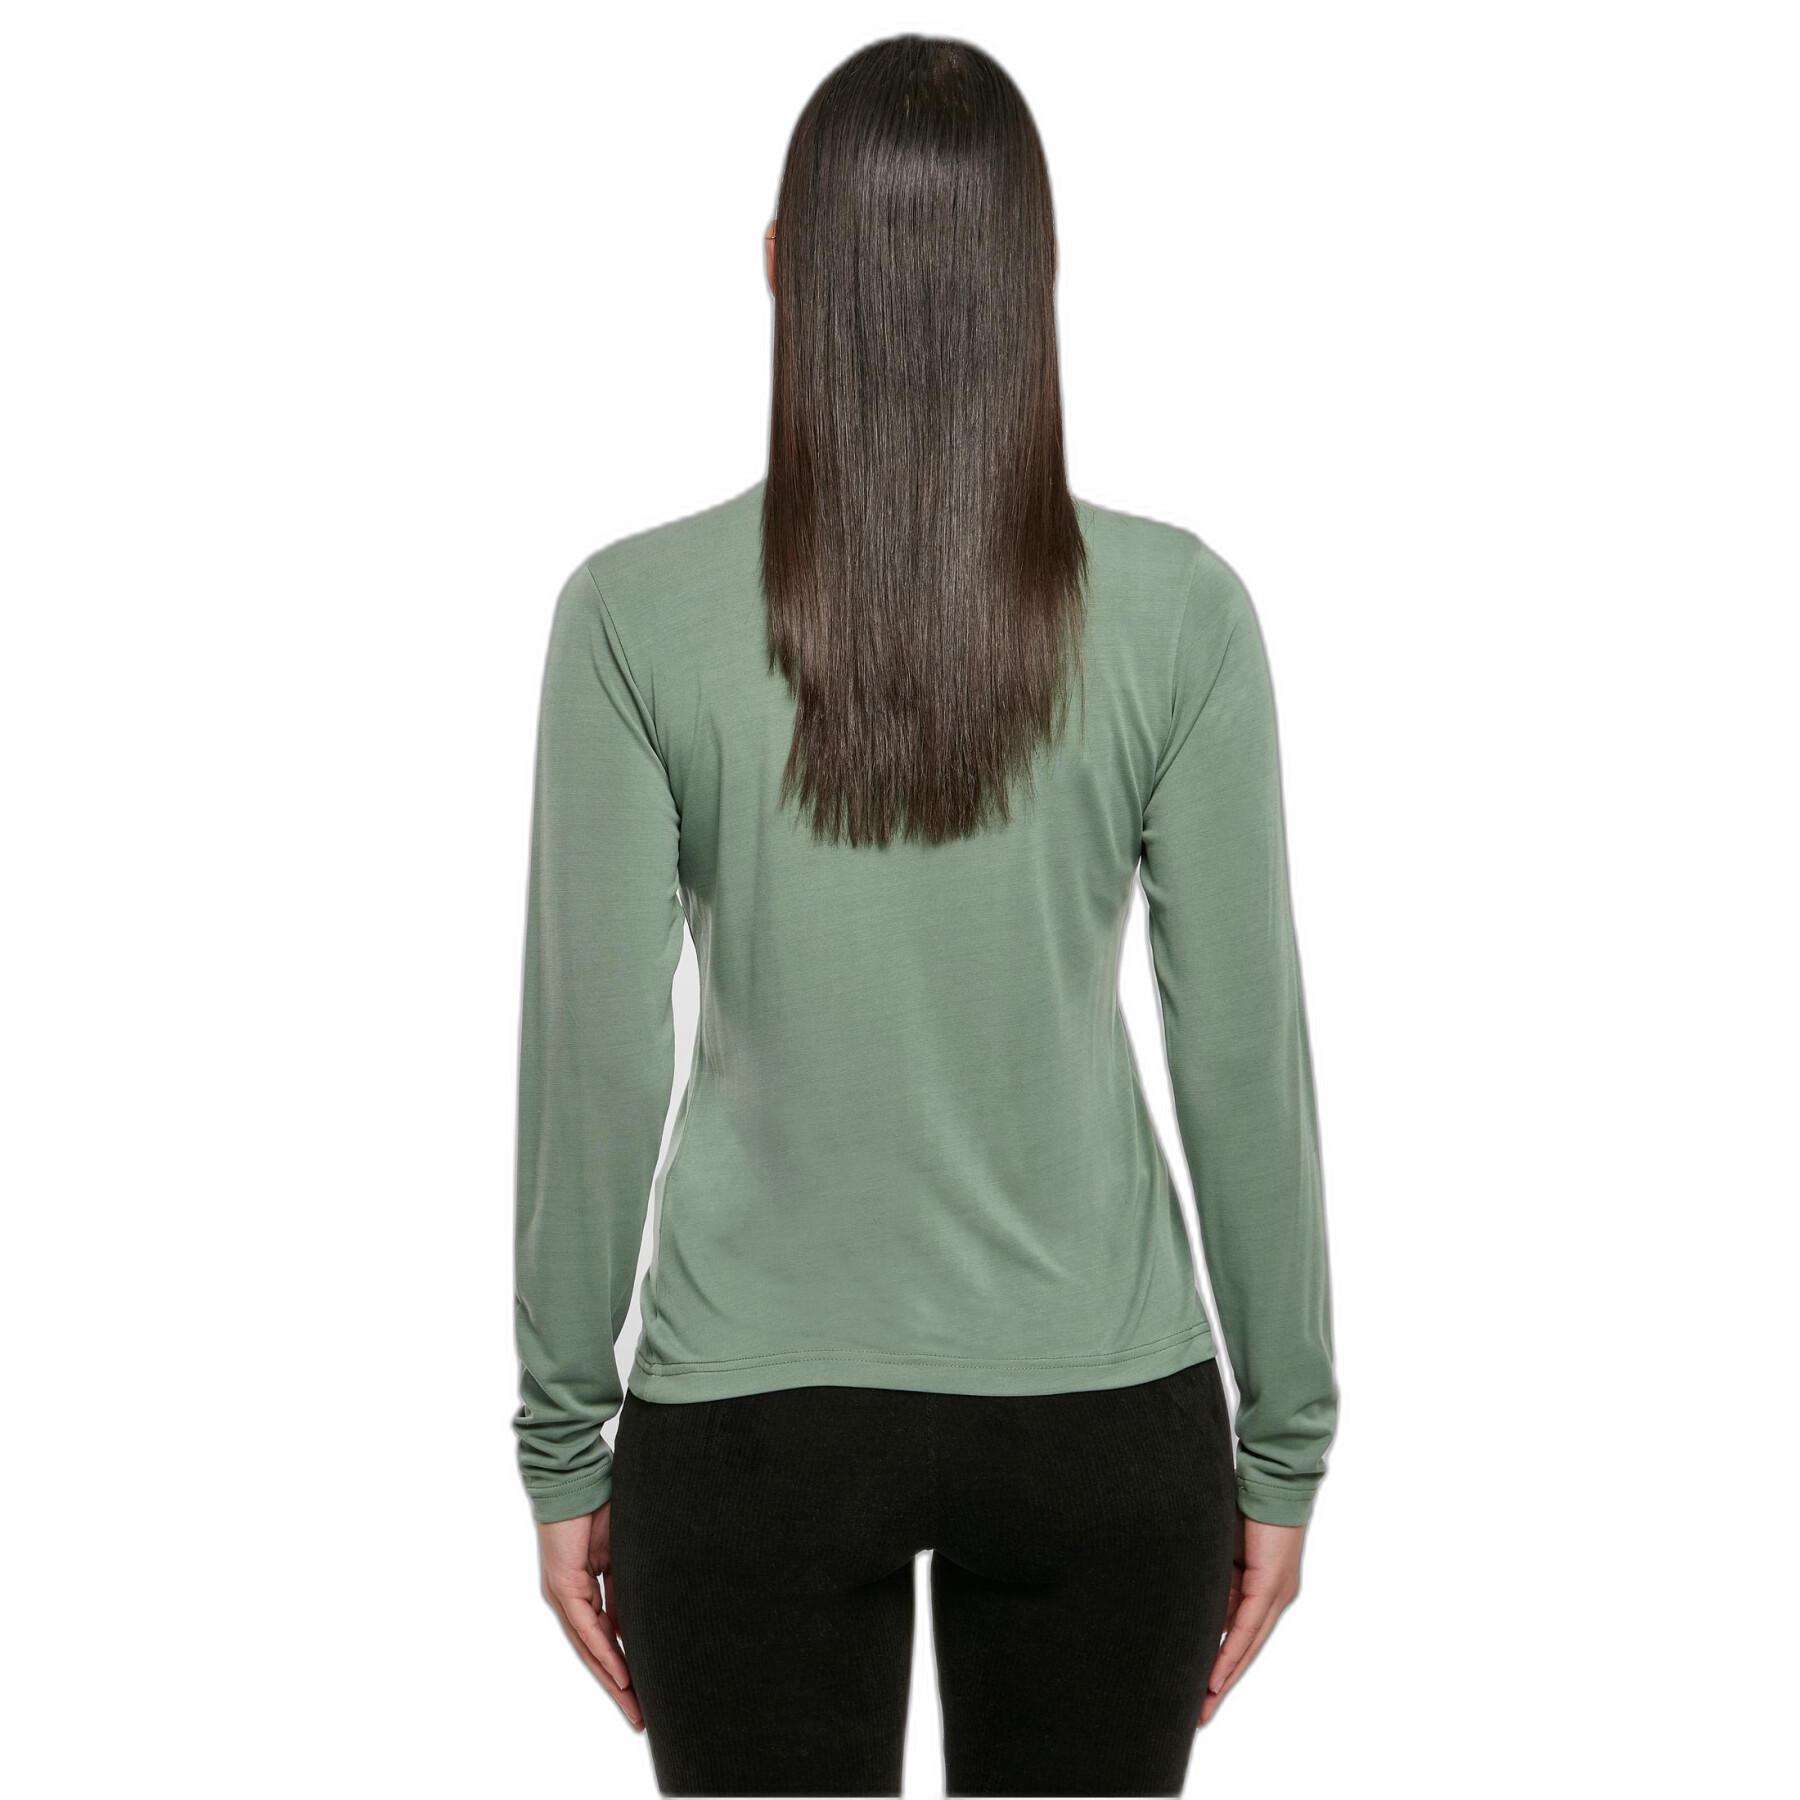 Women's long sleeve turtleneck sweatshirt in modal Urban Classics GT